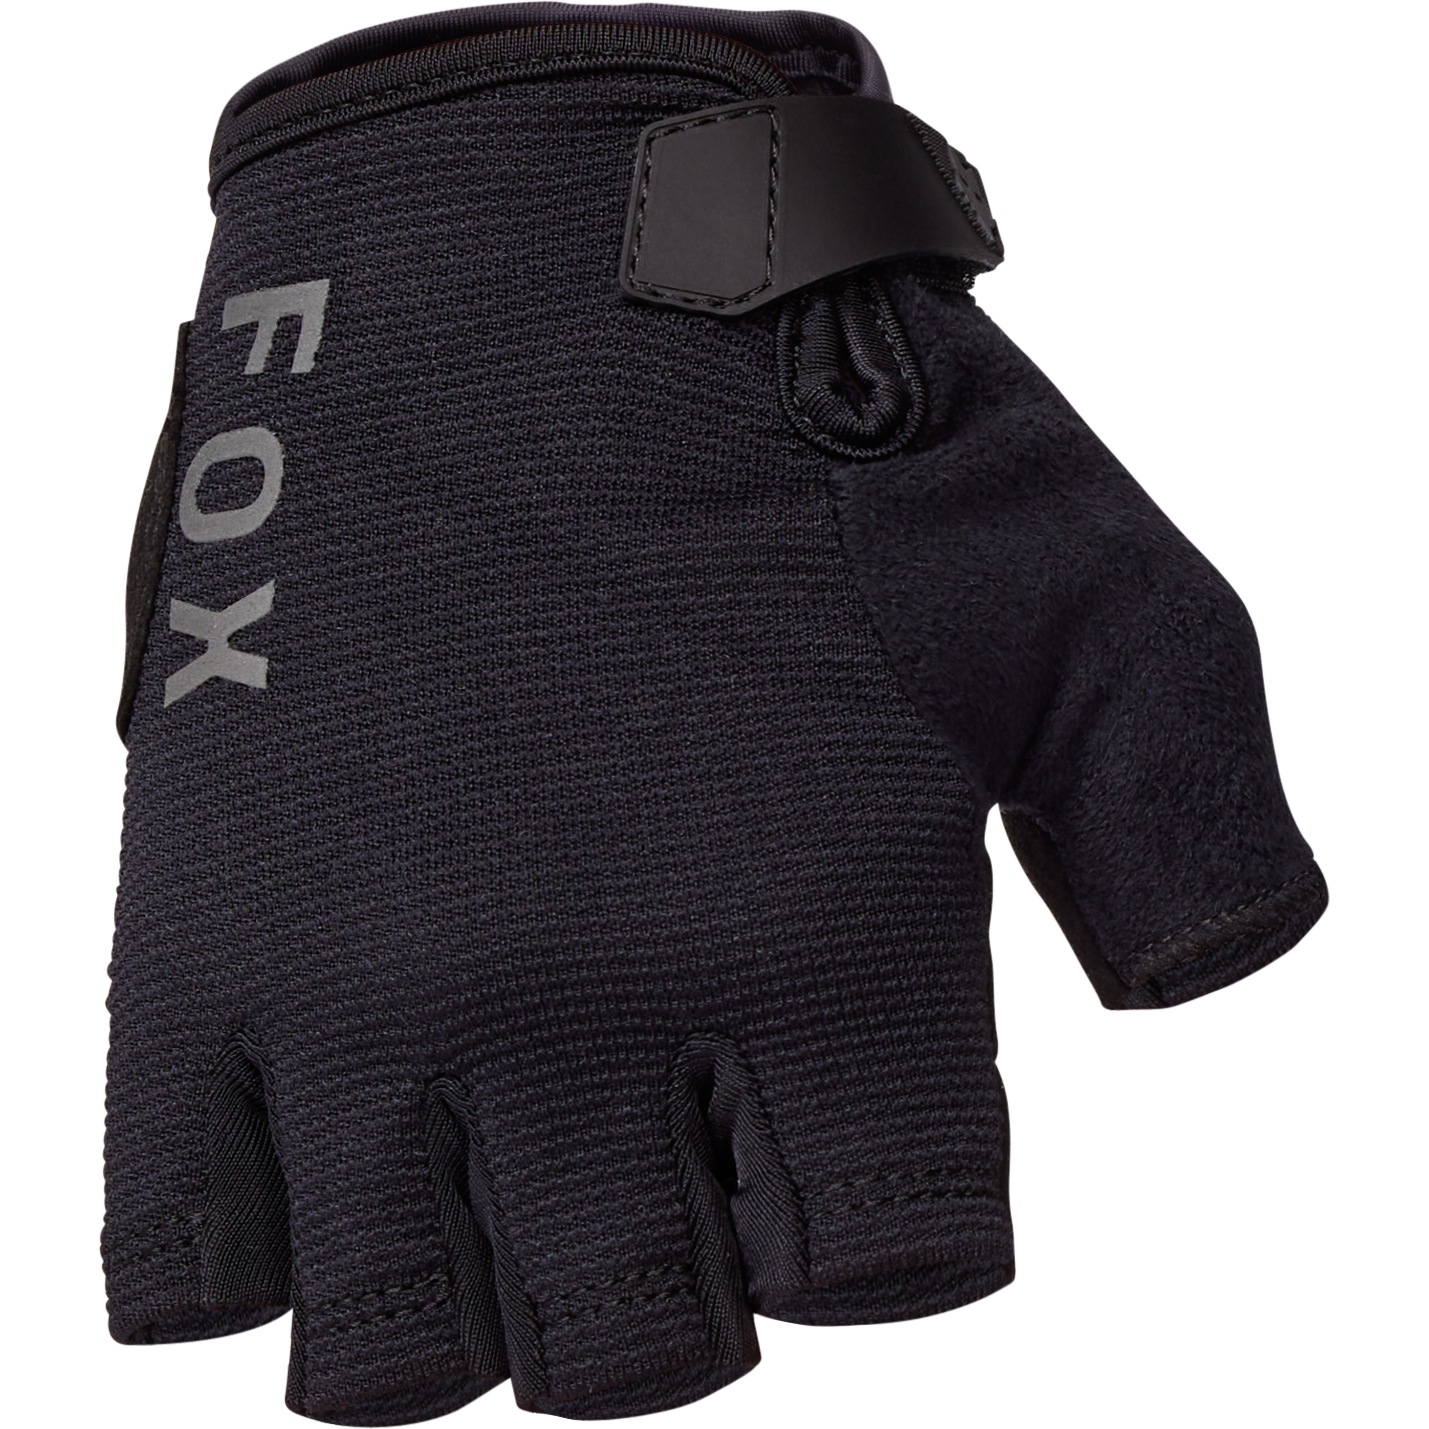 Produktbild von FOX Ranger MTB Gel Kurzfingerhandschuhe Damen - schwarz